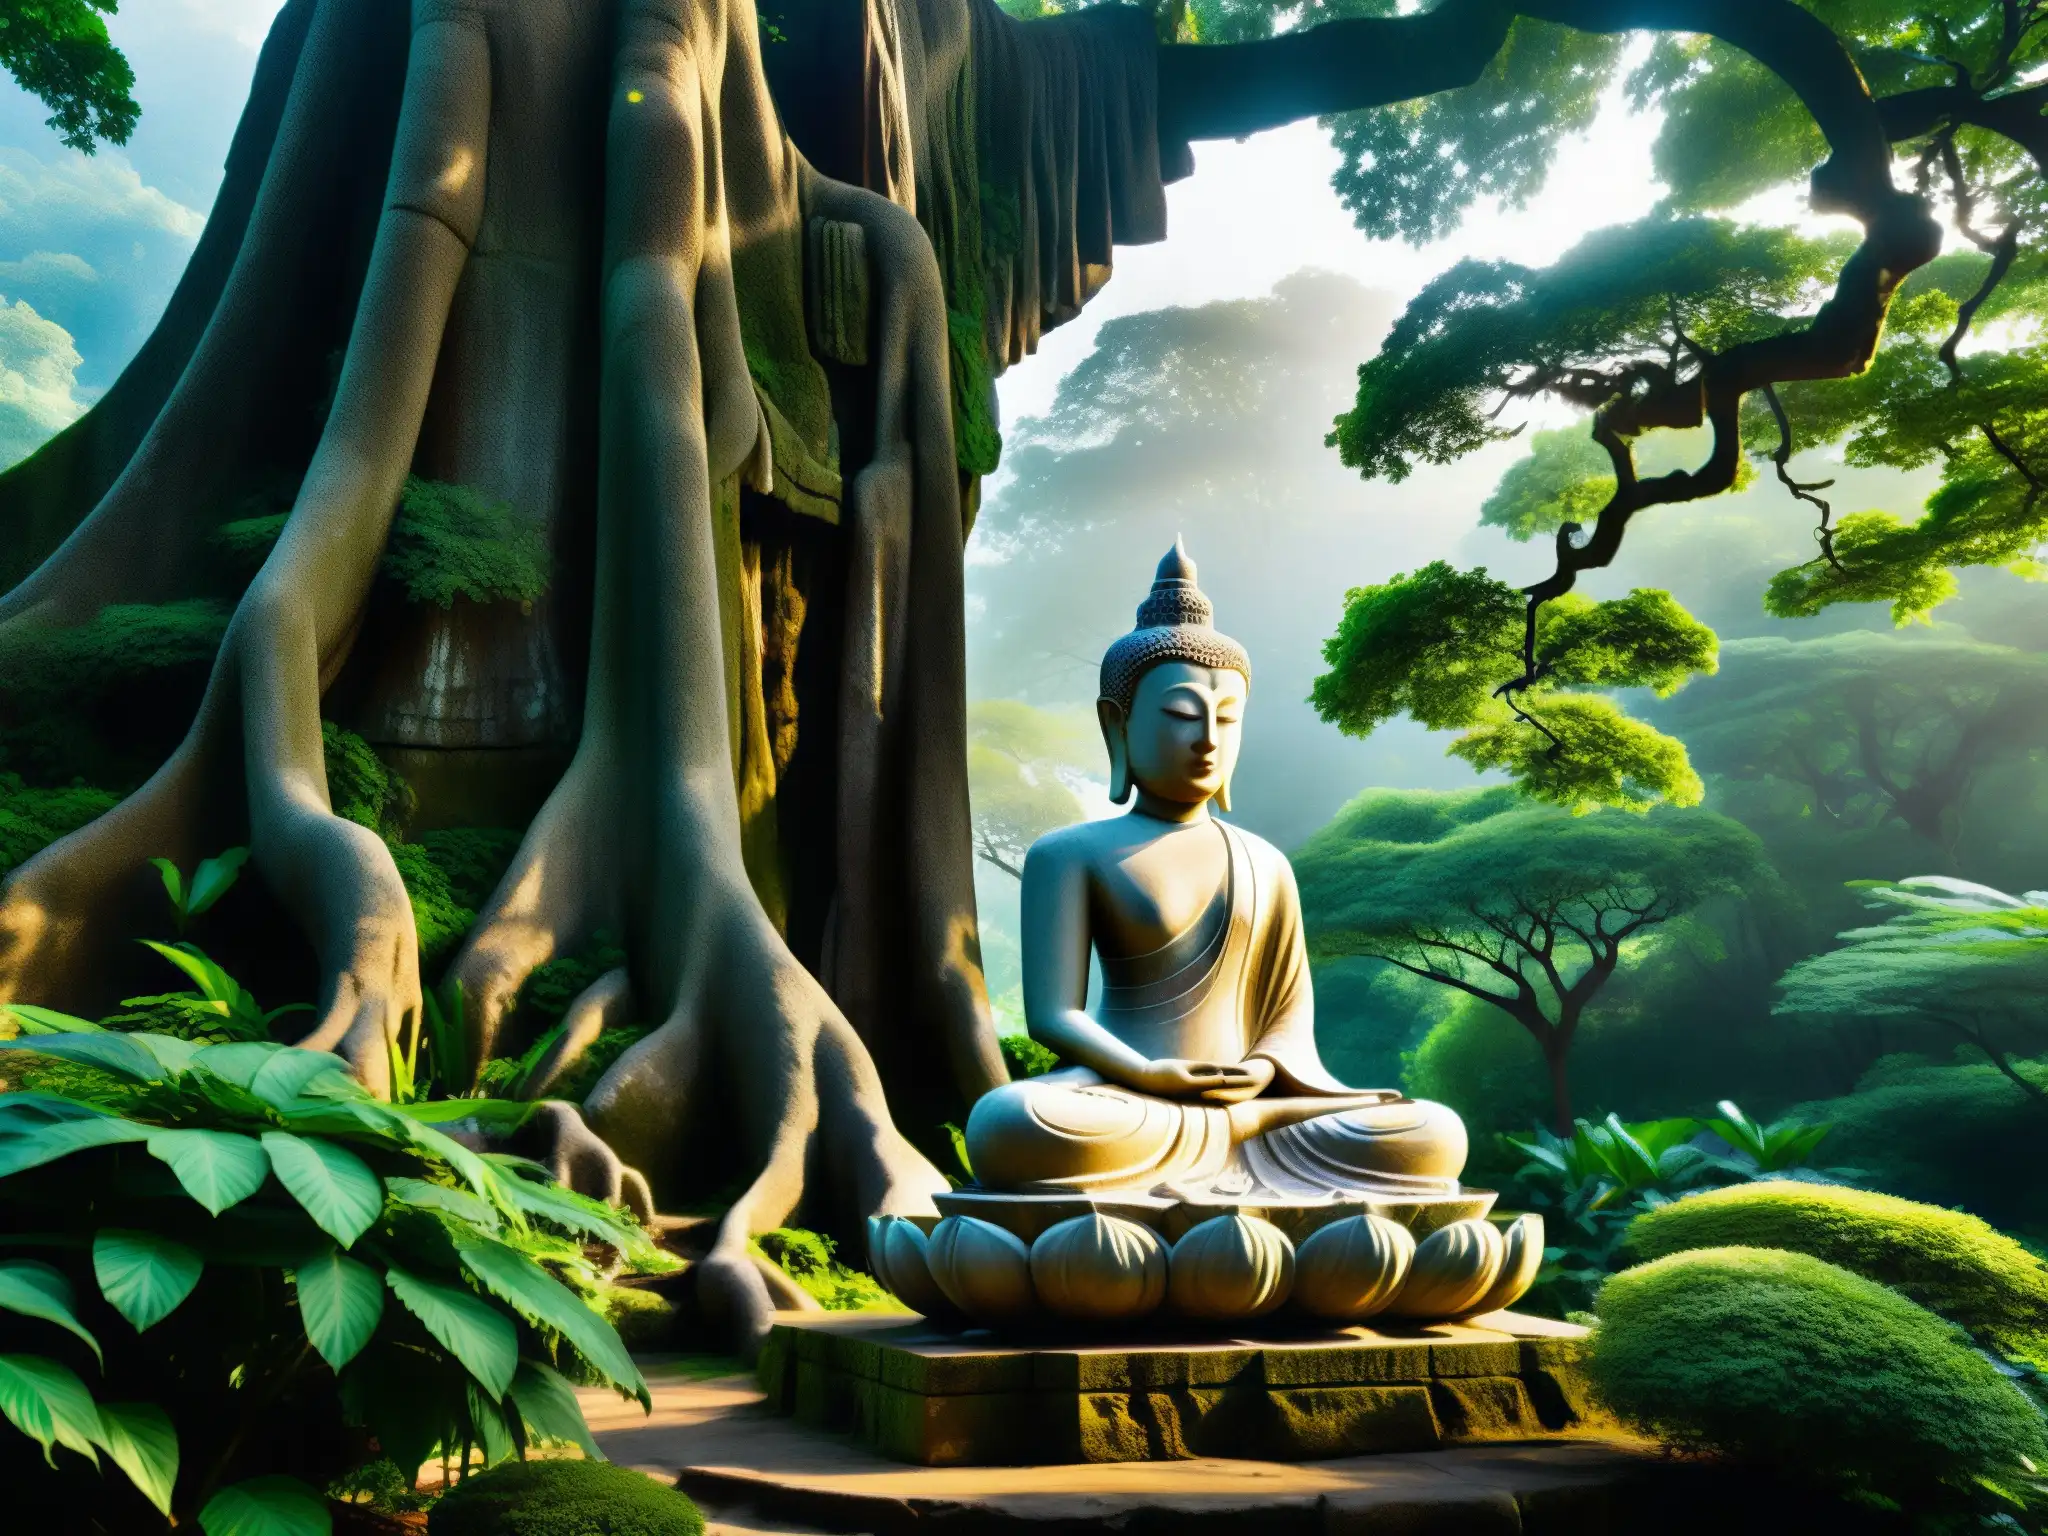 El Secreto de la Estatua Ksitigarbha: una majestuosa estatua de piedra entre un bosque exuberante, bañada por la suave luz del sol entre las hojas